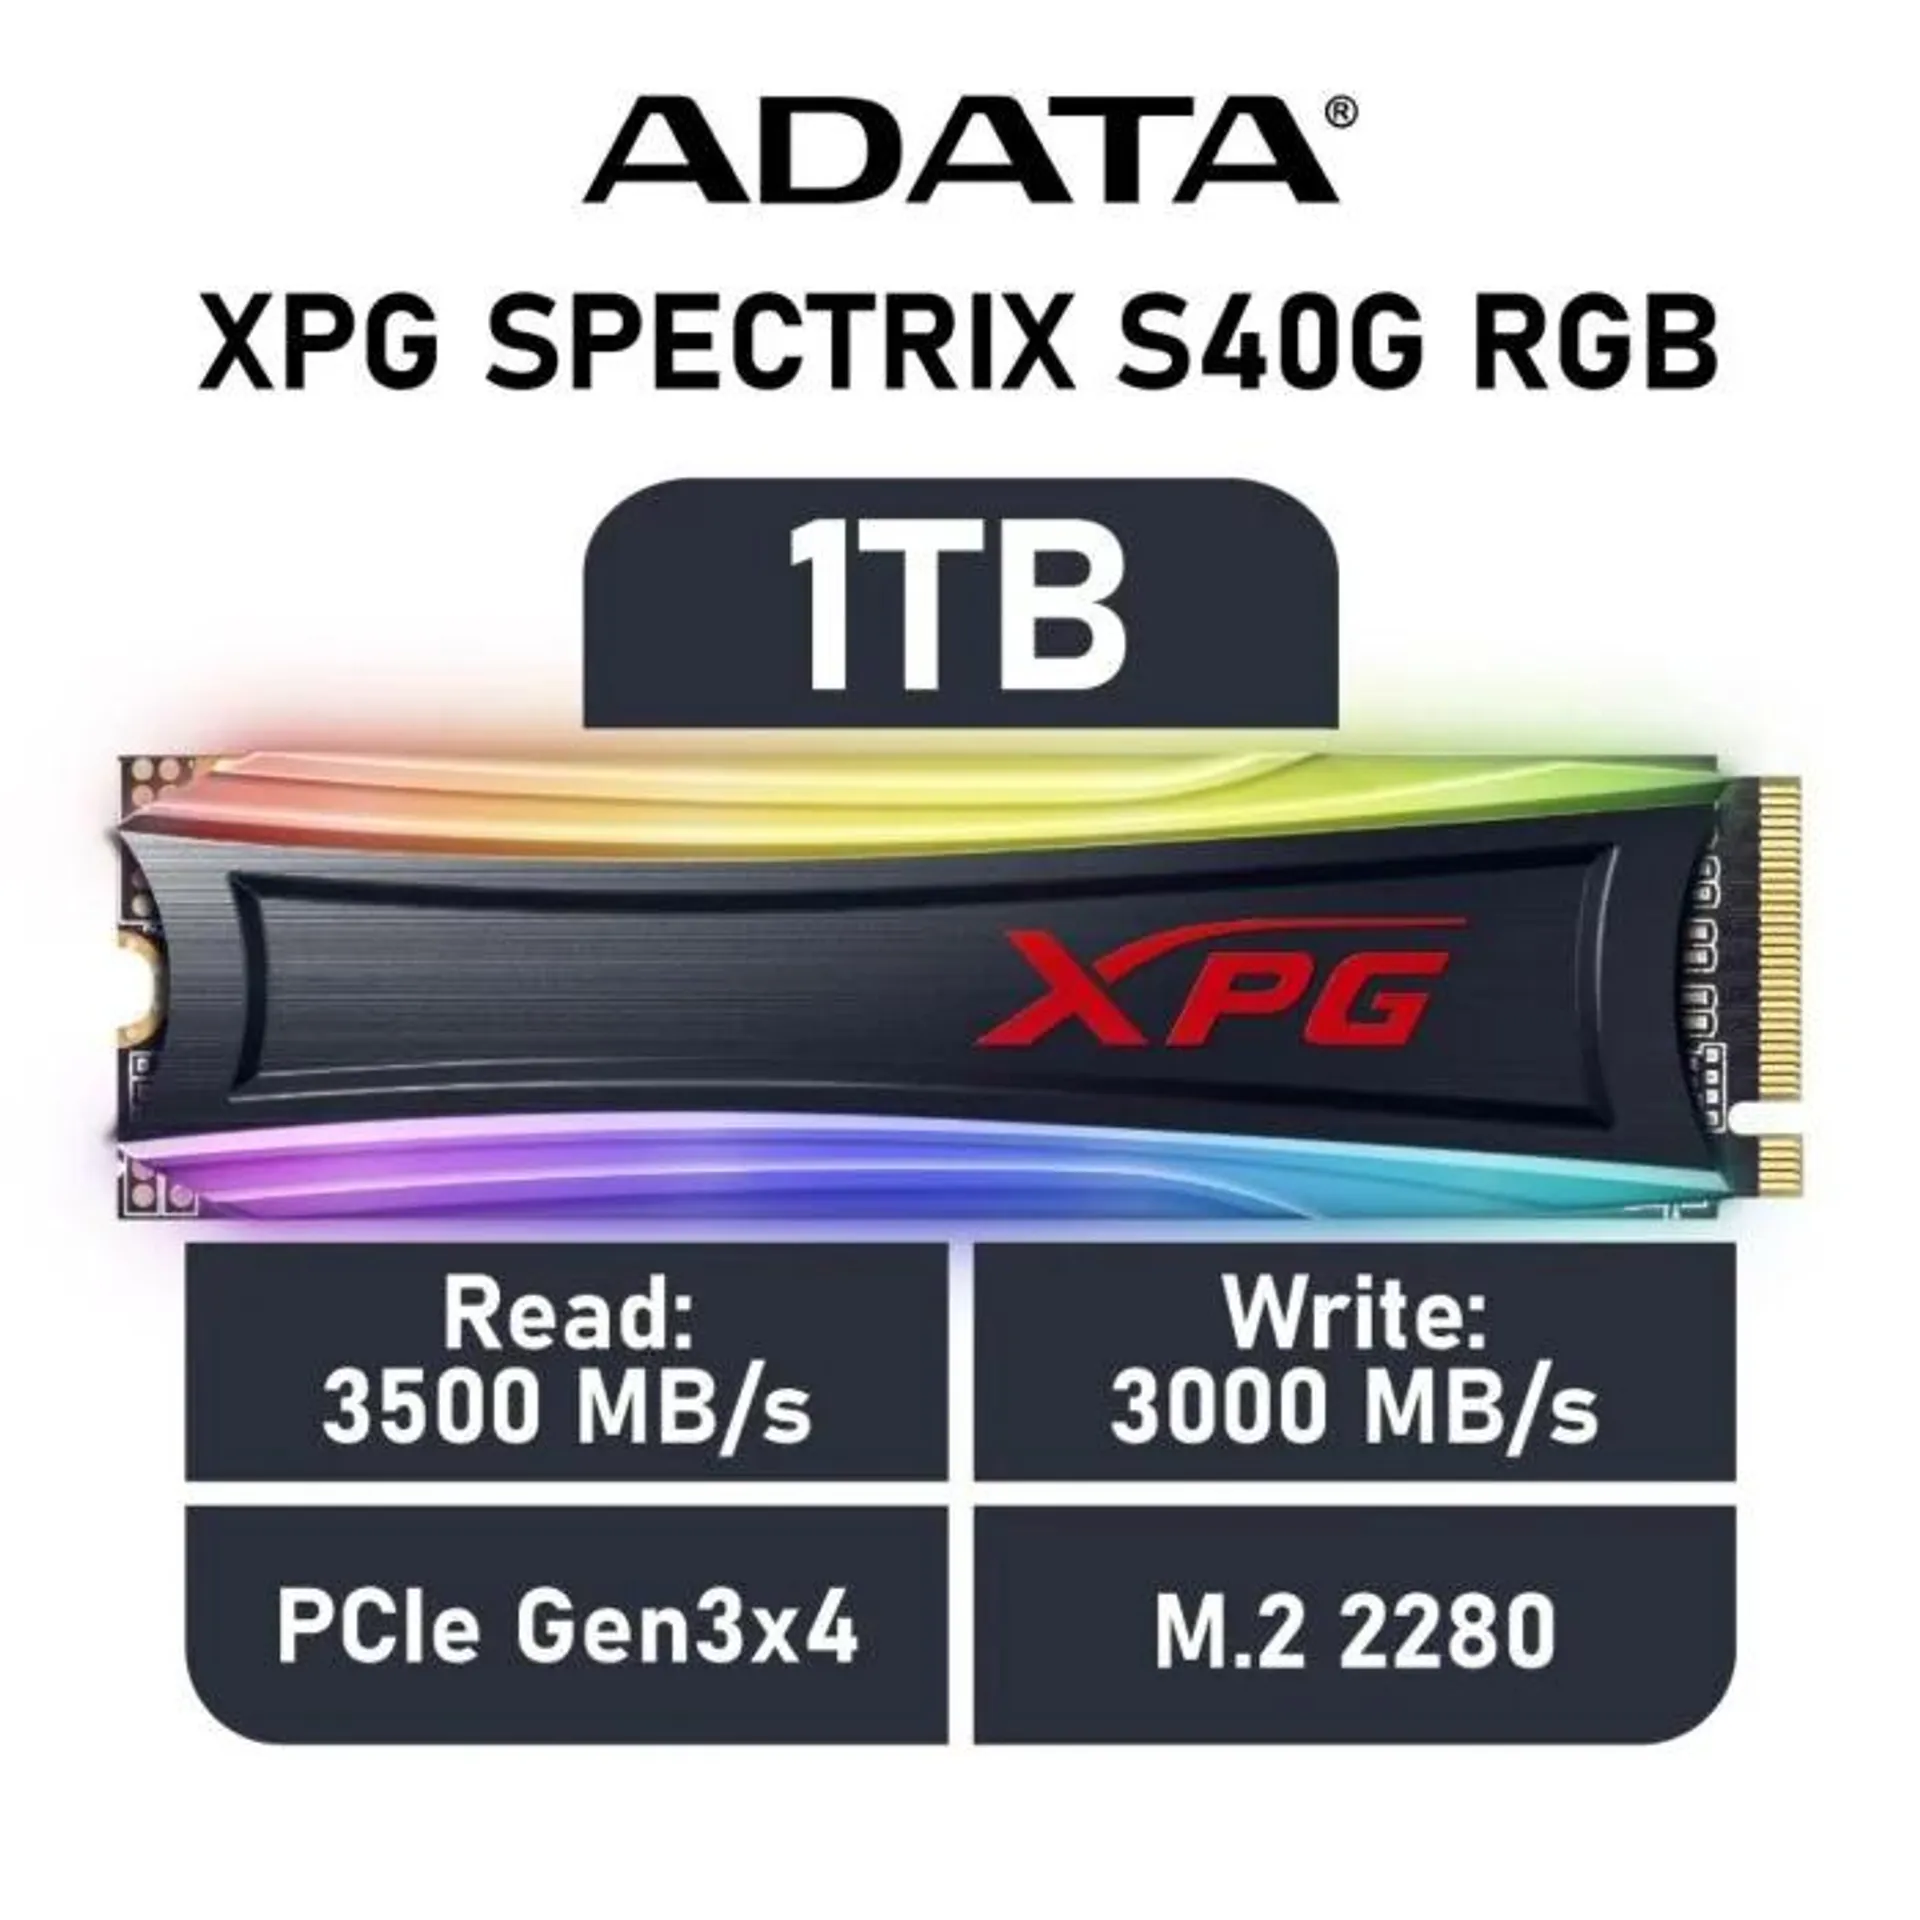 ADATA XPG SPECTRIX S40G RGB 1TB PCIe Gen3x4 AS40G-1TT-C M.2 2280 Solid State Drive